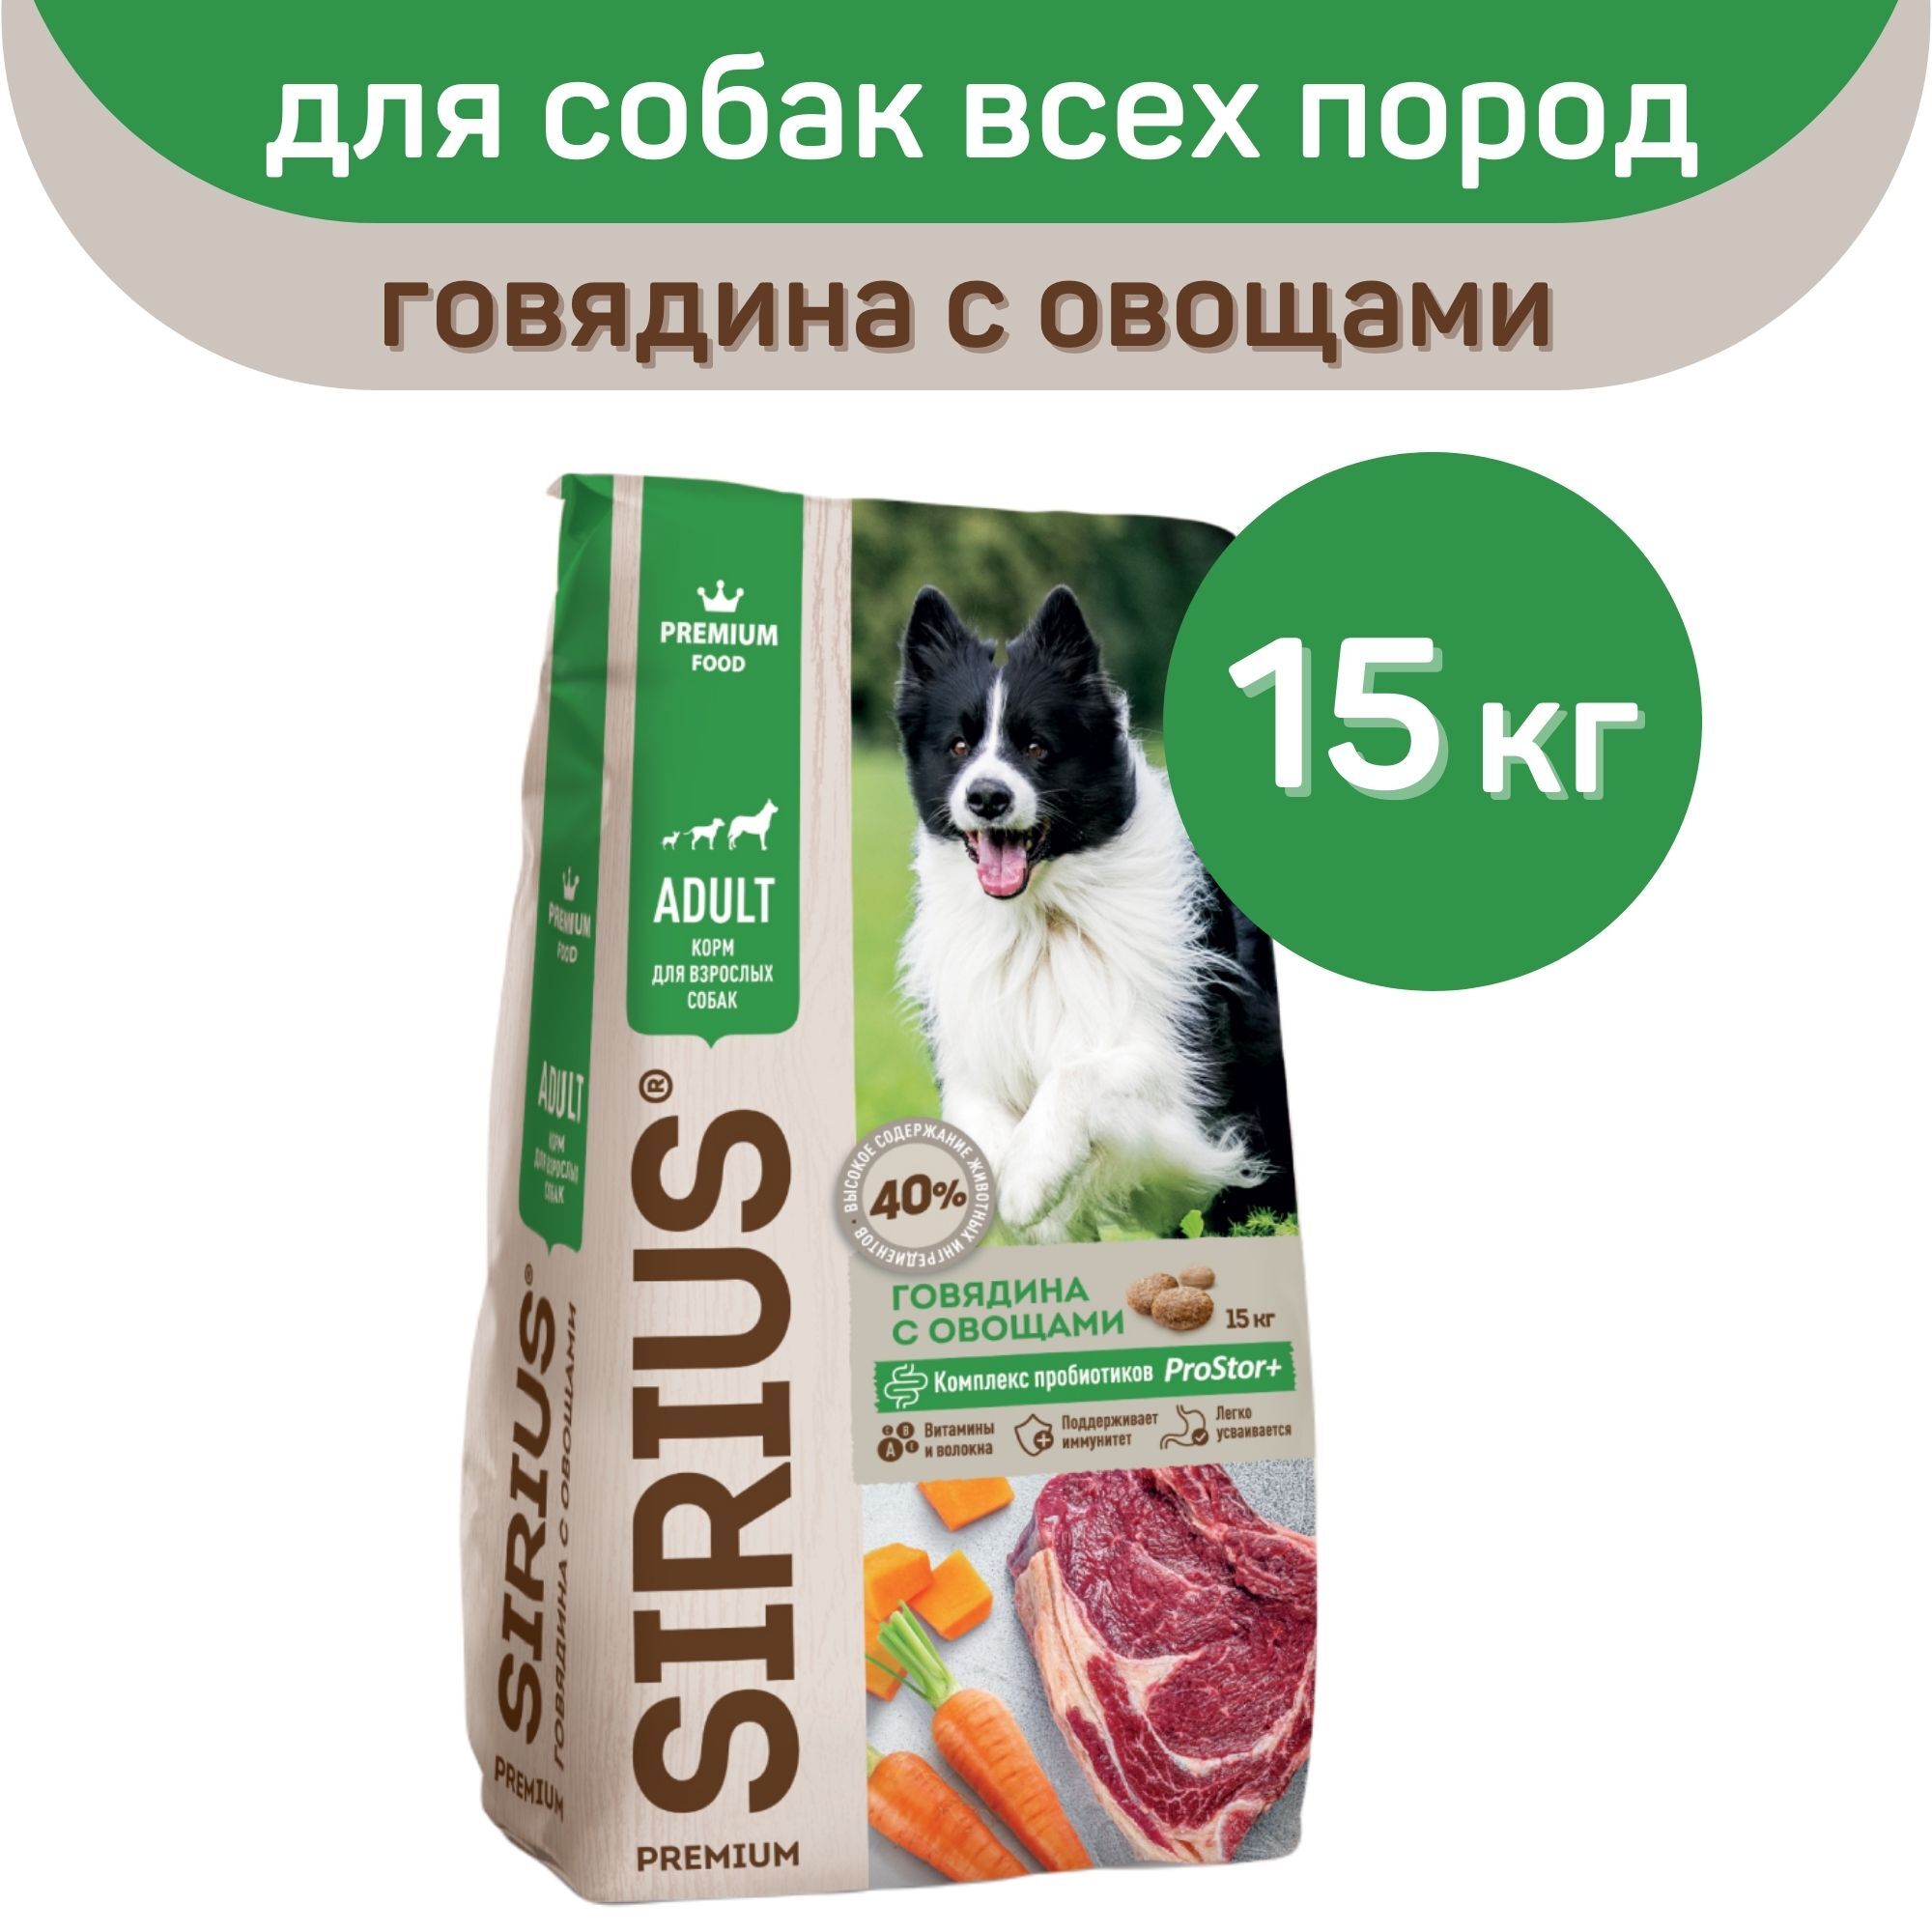 Корм сириус для собак 15 кг. Корм Сириус для щенков 15кг. Сириус корм для собак говядина с овощами 15кг. Sirius корм для собак говядина с овощами 15кг. Sirius корм для собак 15кг.